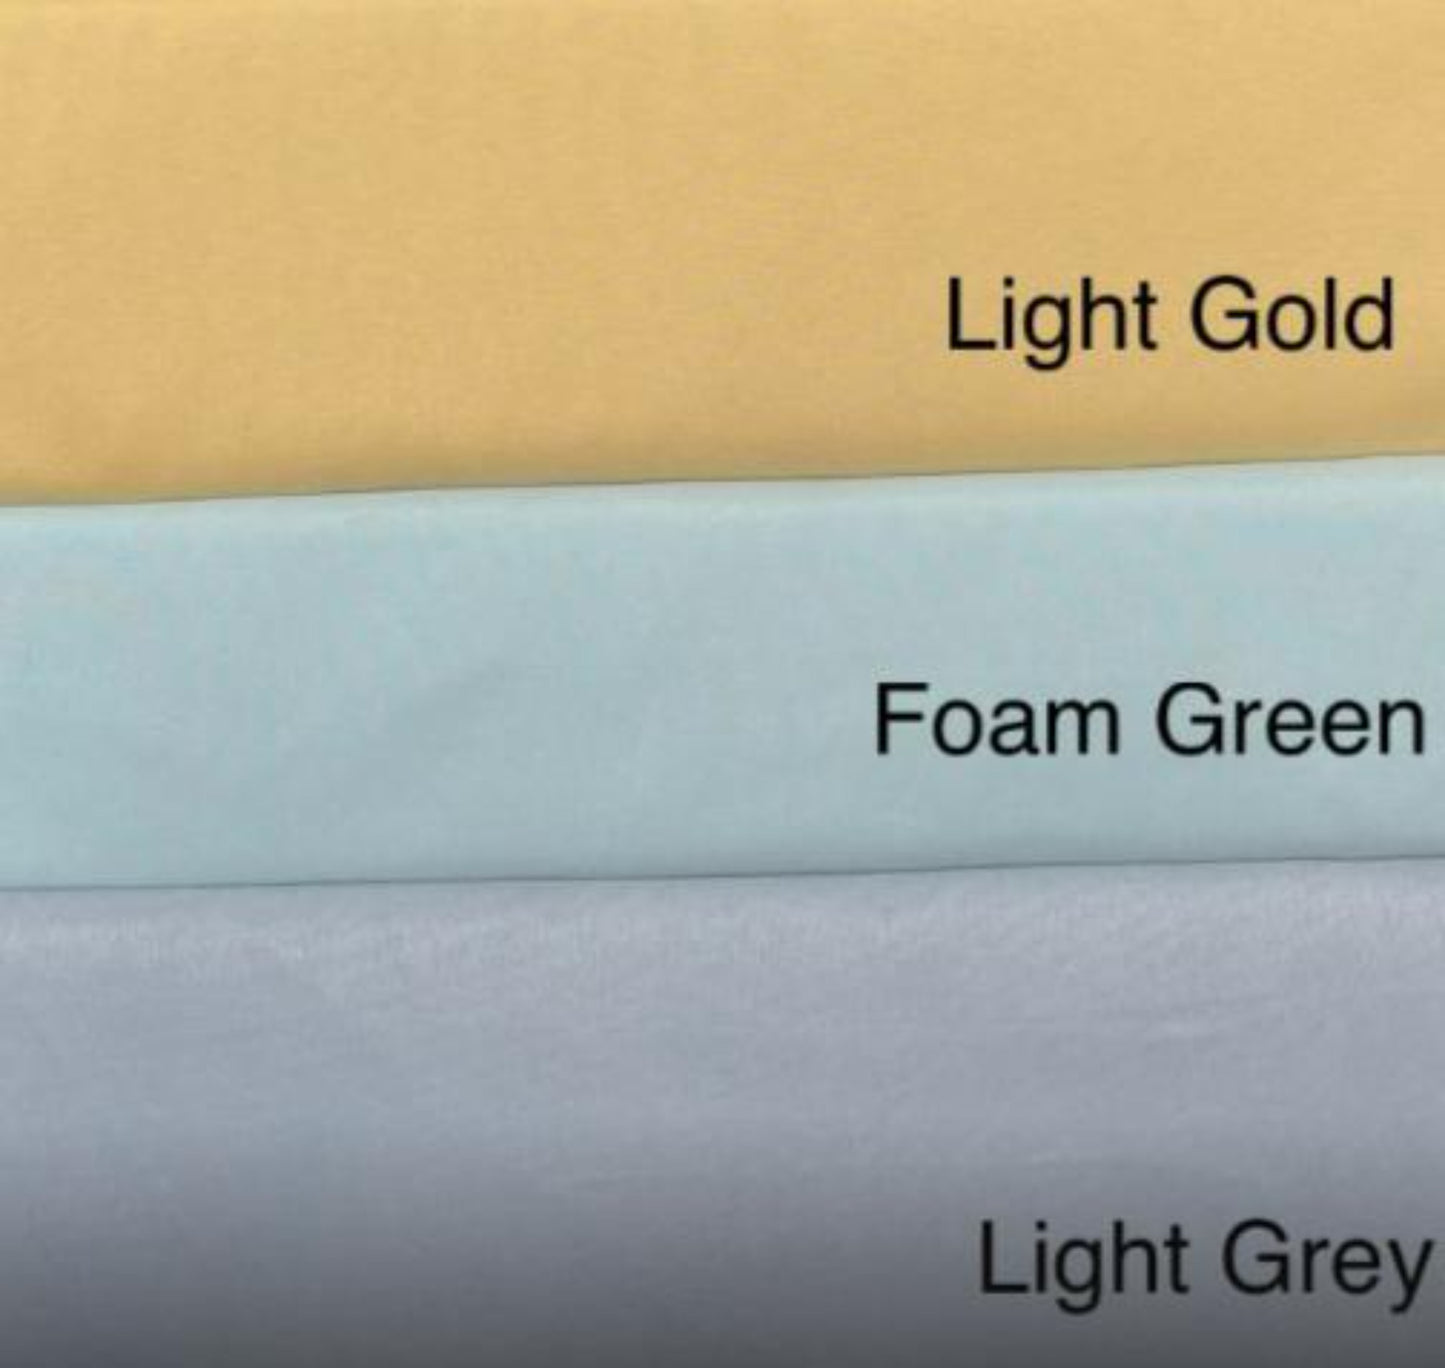 Duvet Cover Set (100% Polyester) - Light Gold, Foam Green, Light Grey